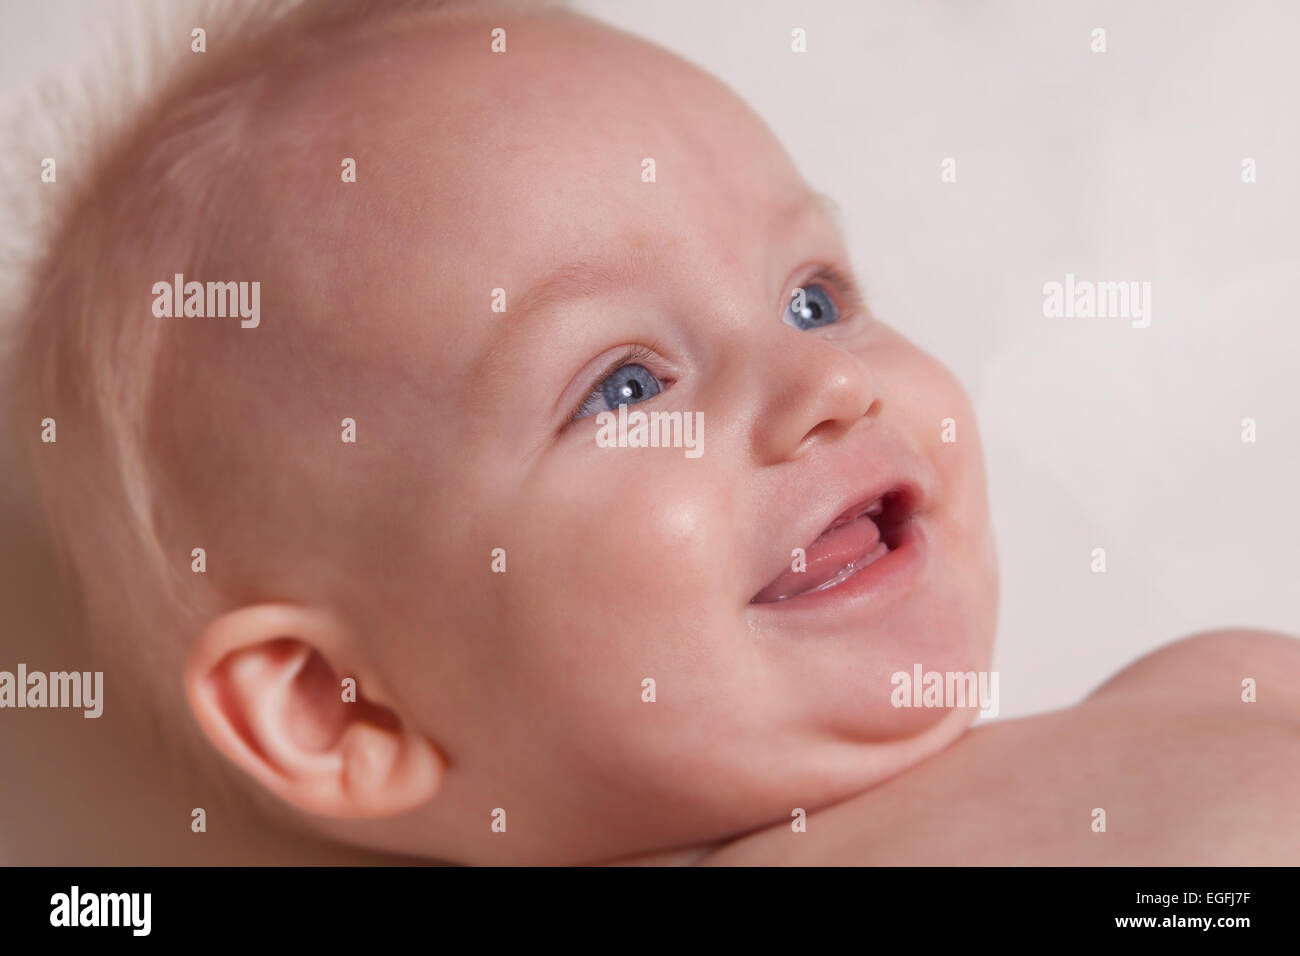 El bebé de 7 meses Foto de stock